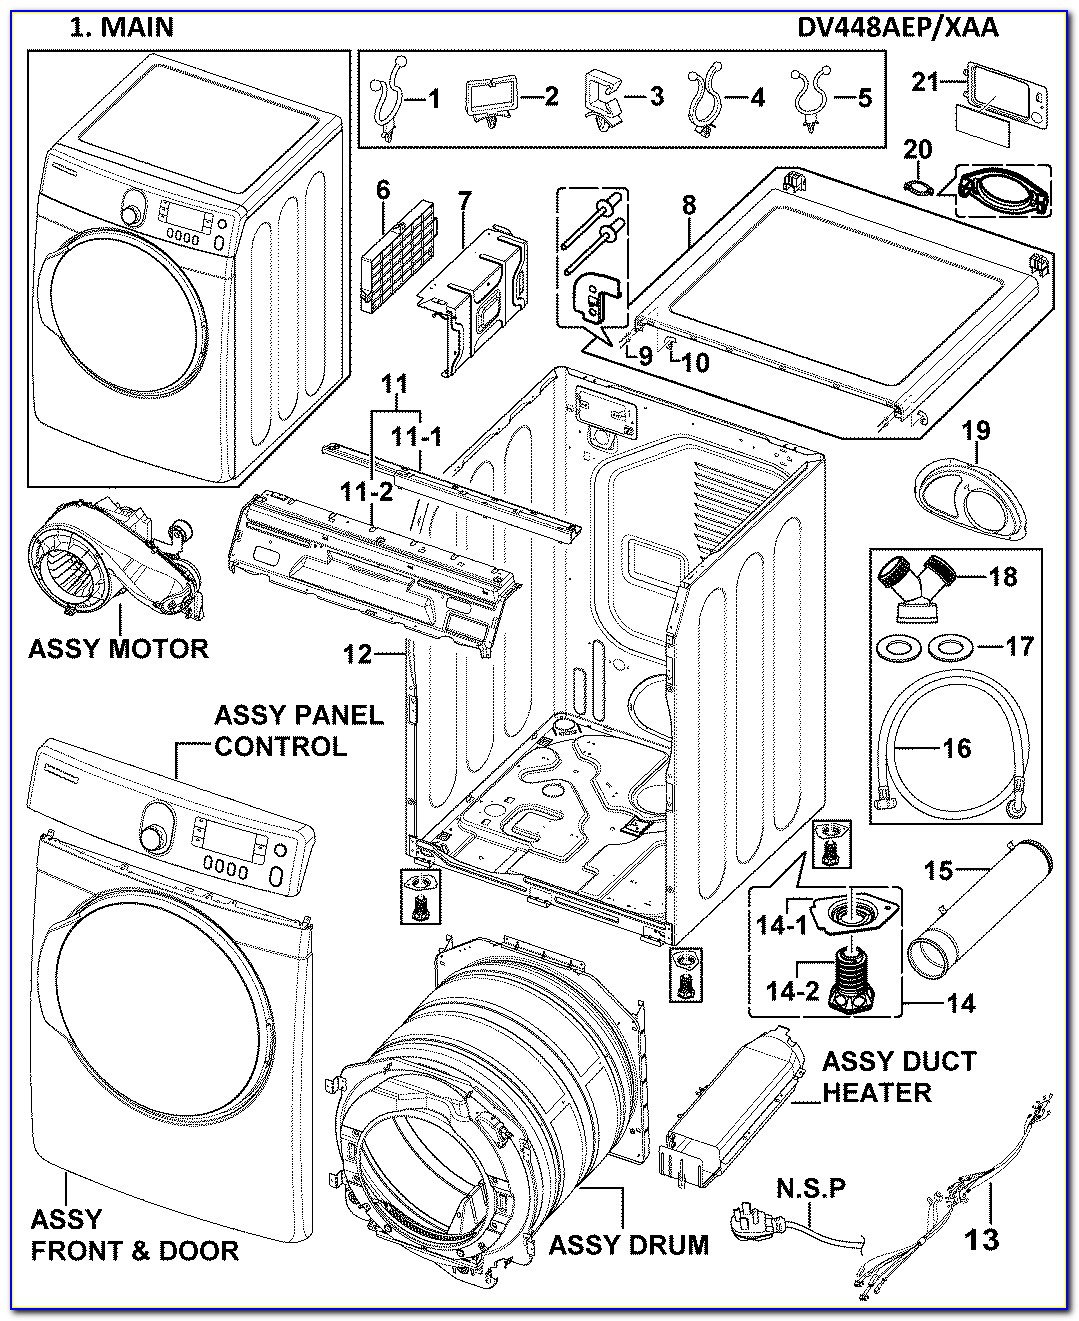 Samsung Dryer Element Wiring Diagram